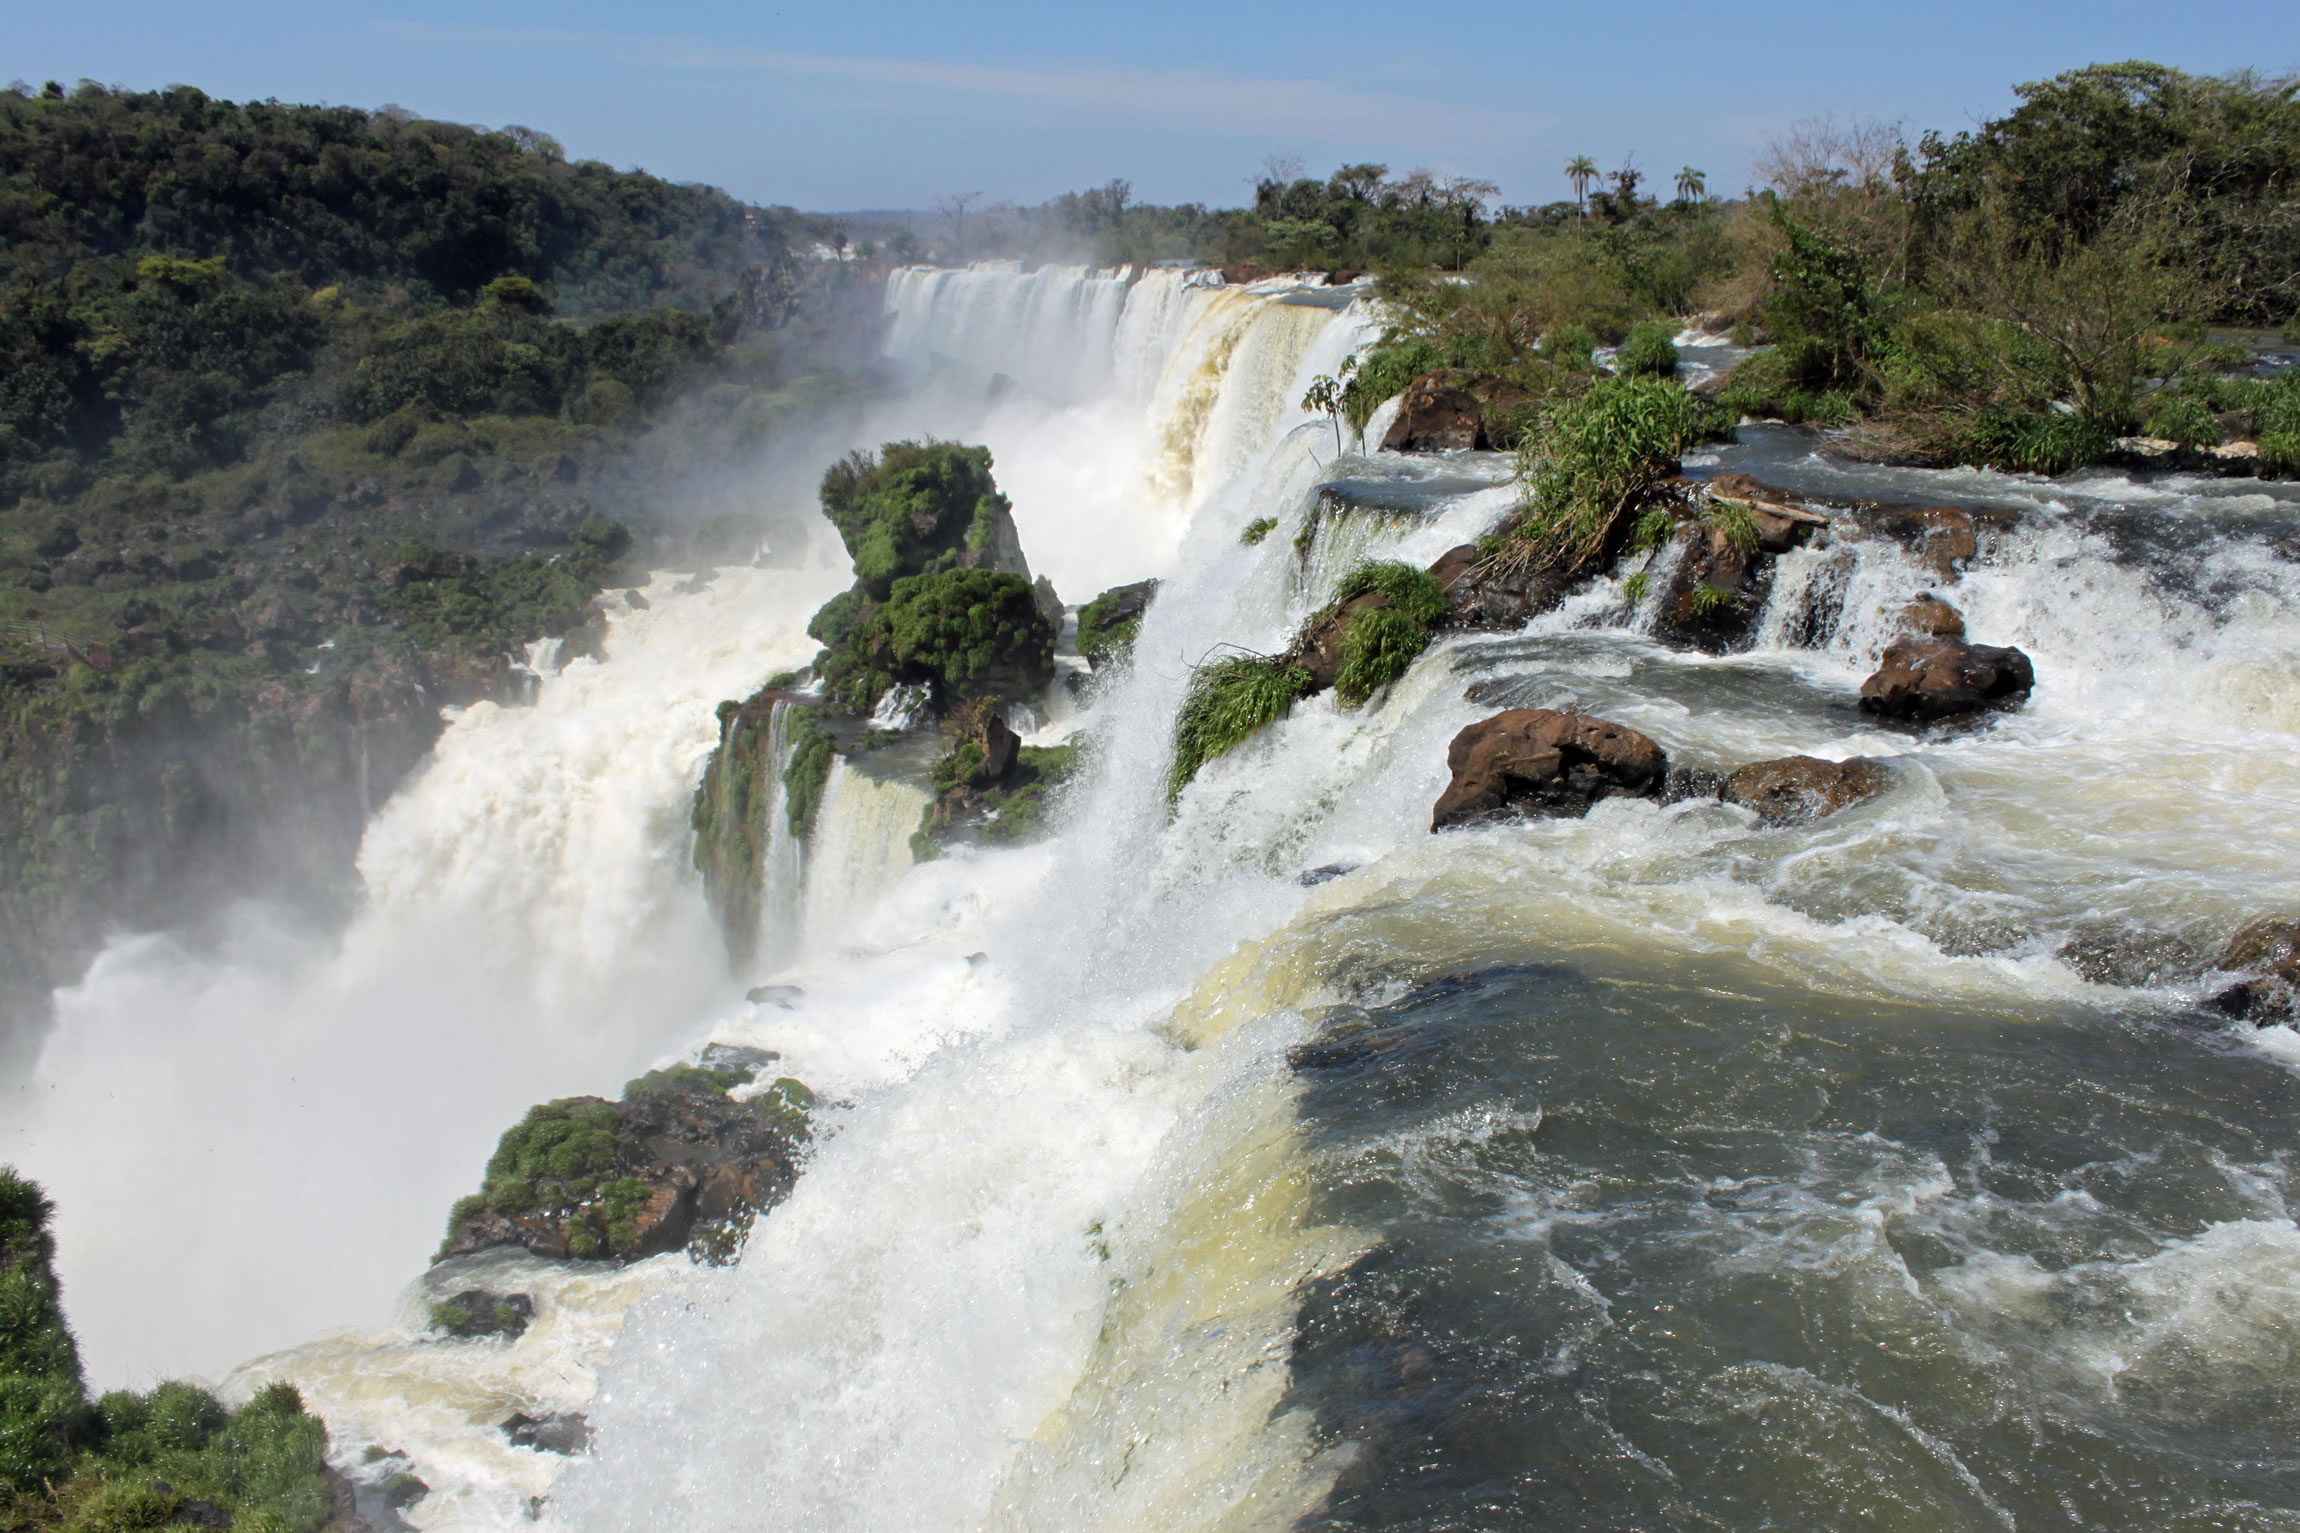 Monumentos naturales que descubrir - Cataratas del Iguazú, Brasil y Argentina